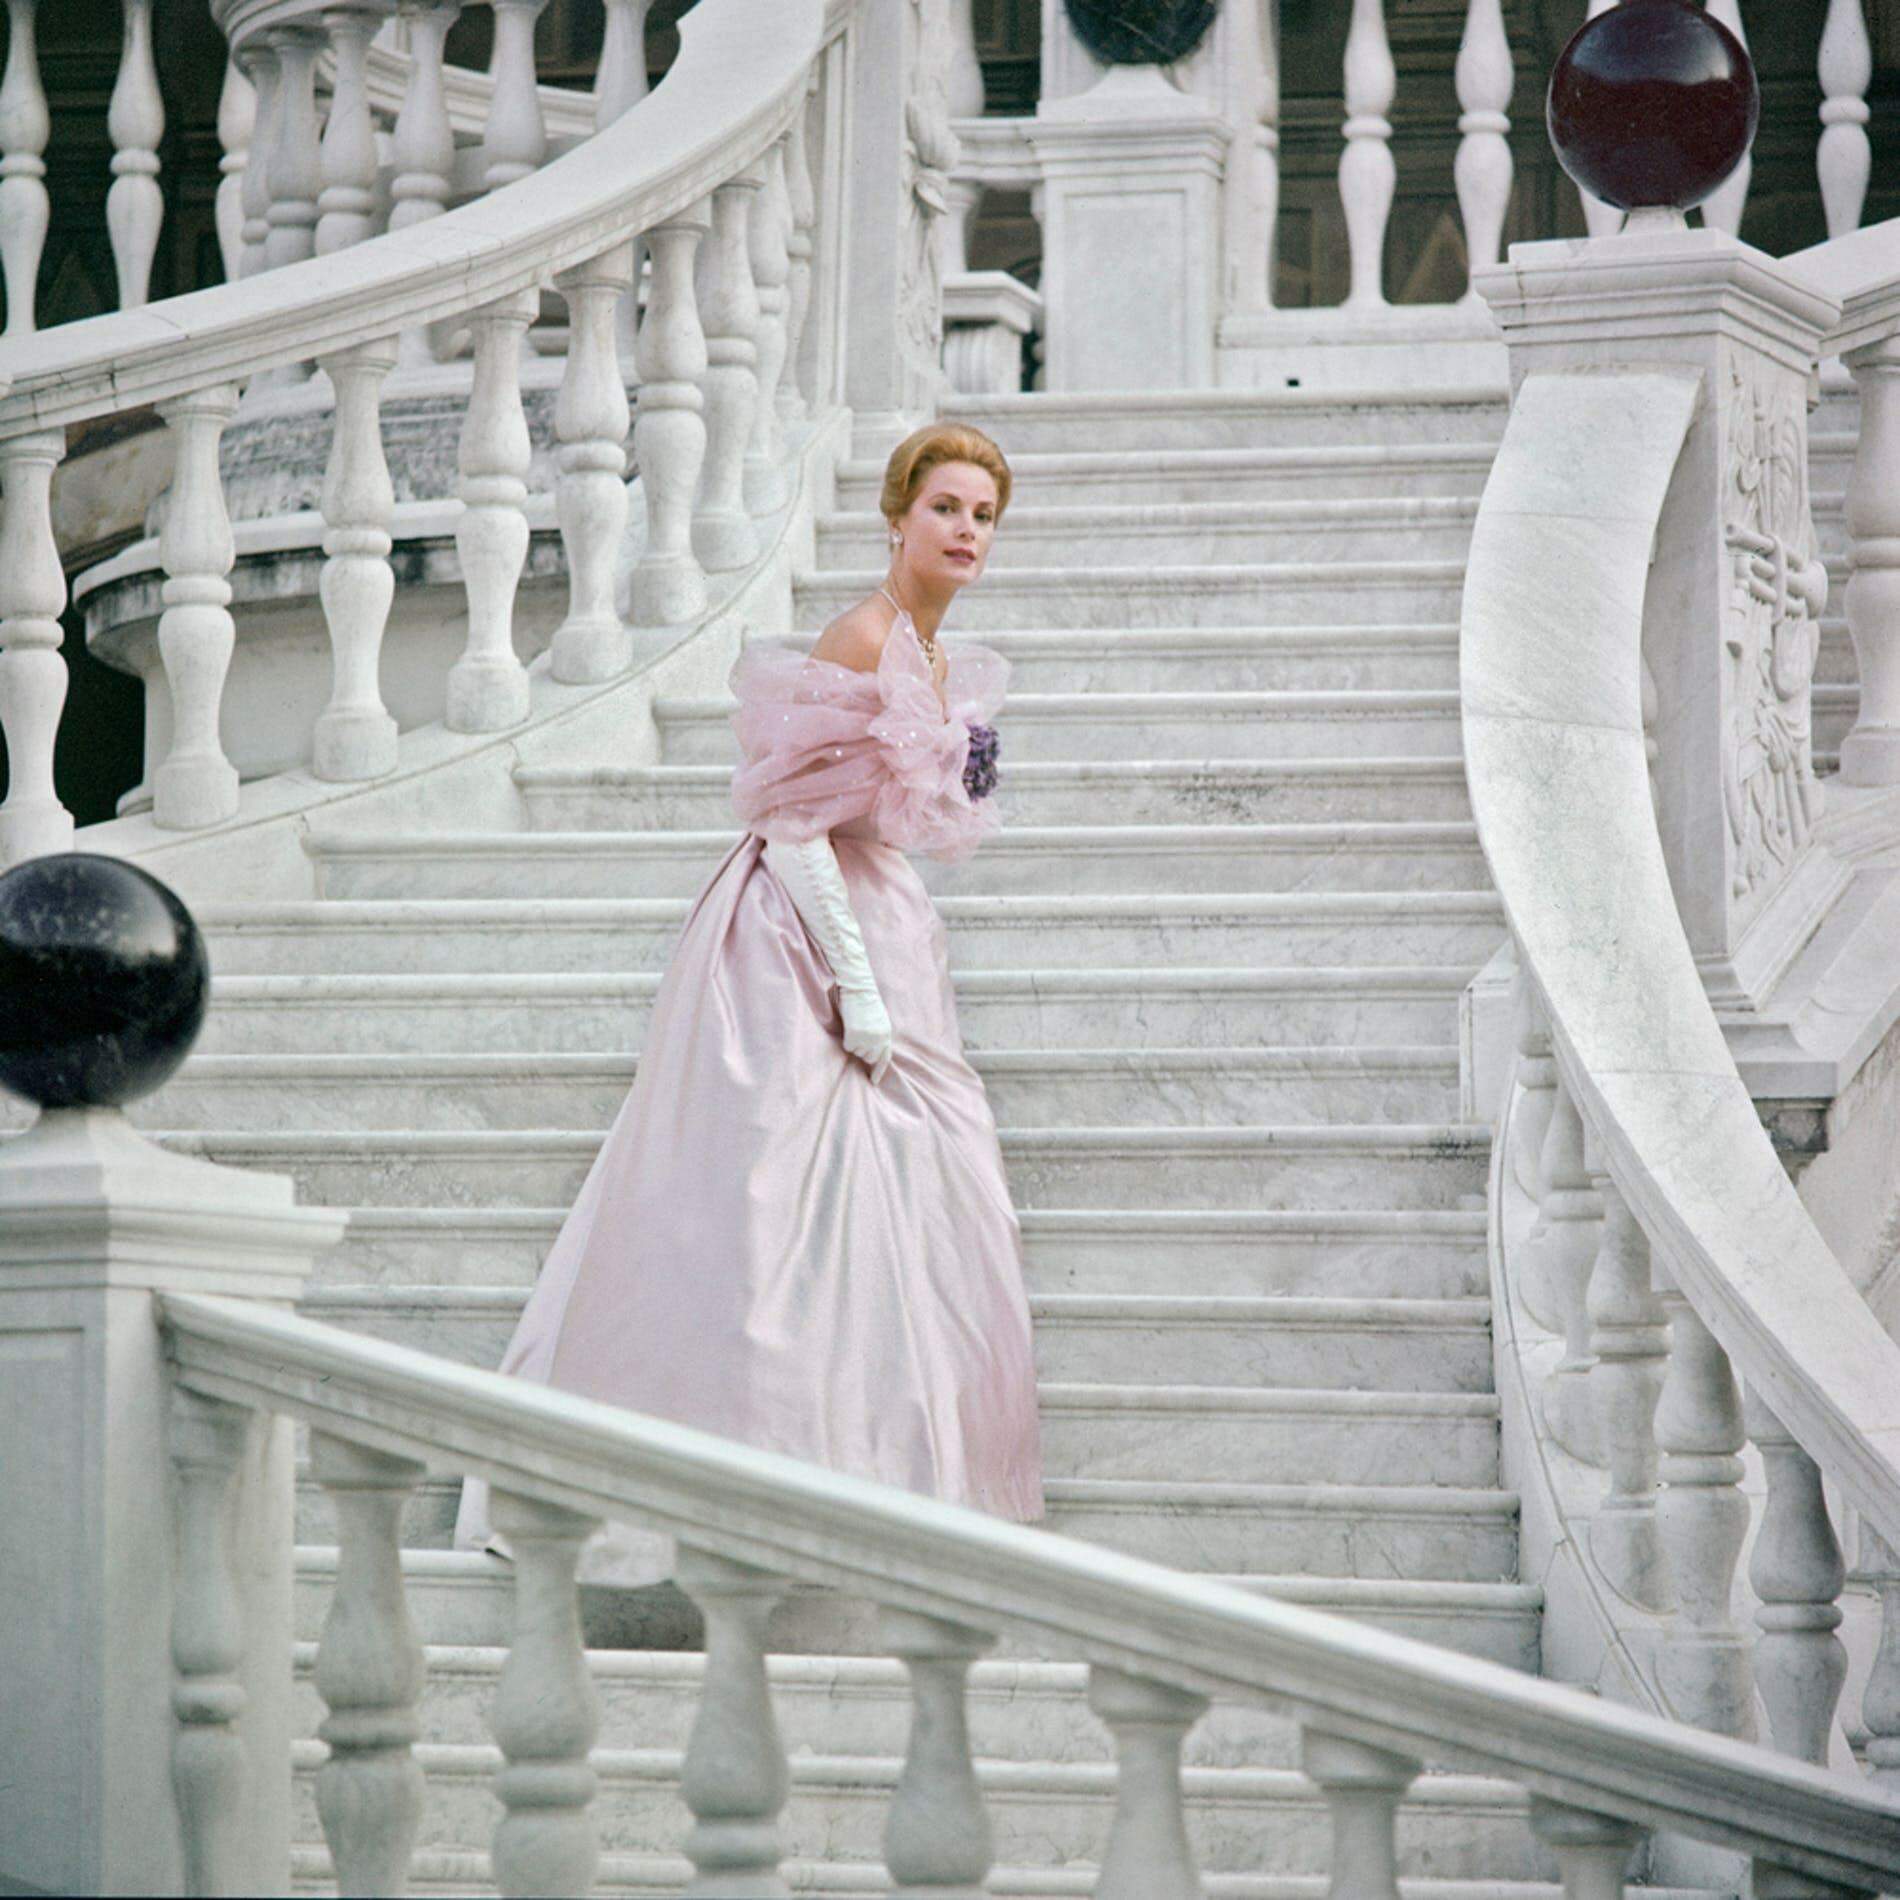 O Guarda-roupa de Grace Kelly será exposto no Museu Christian Dior